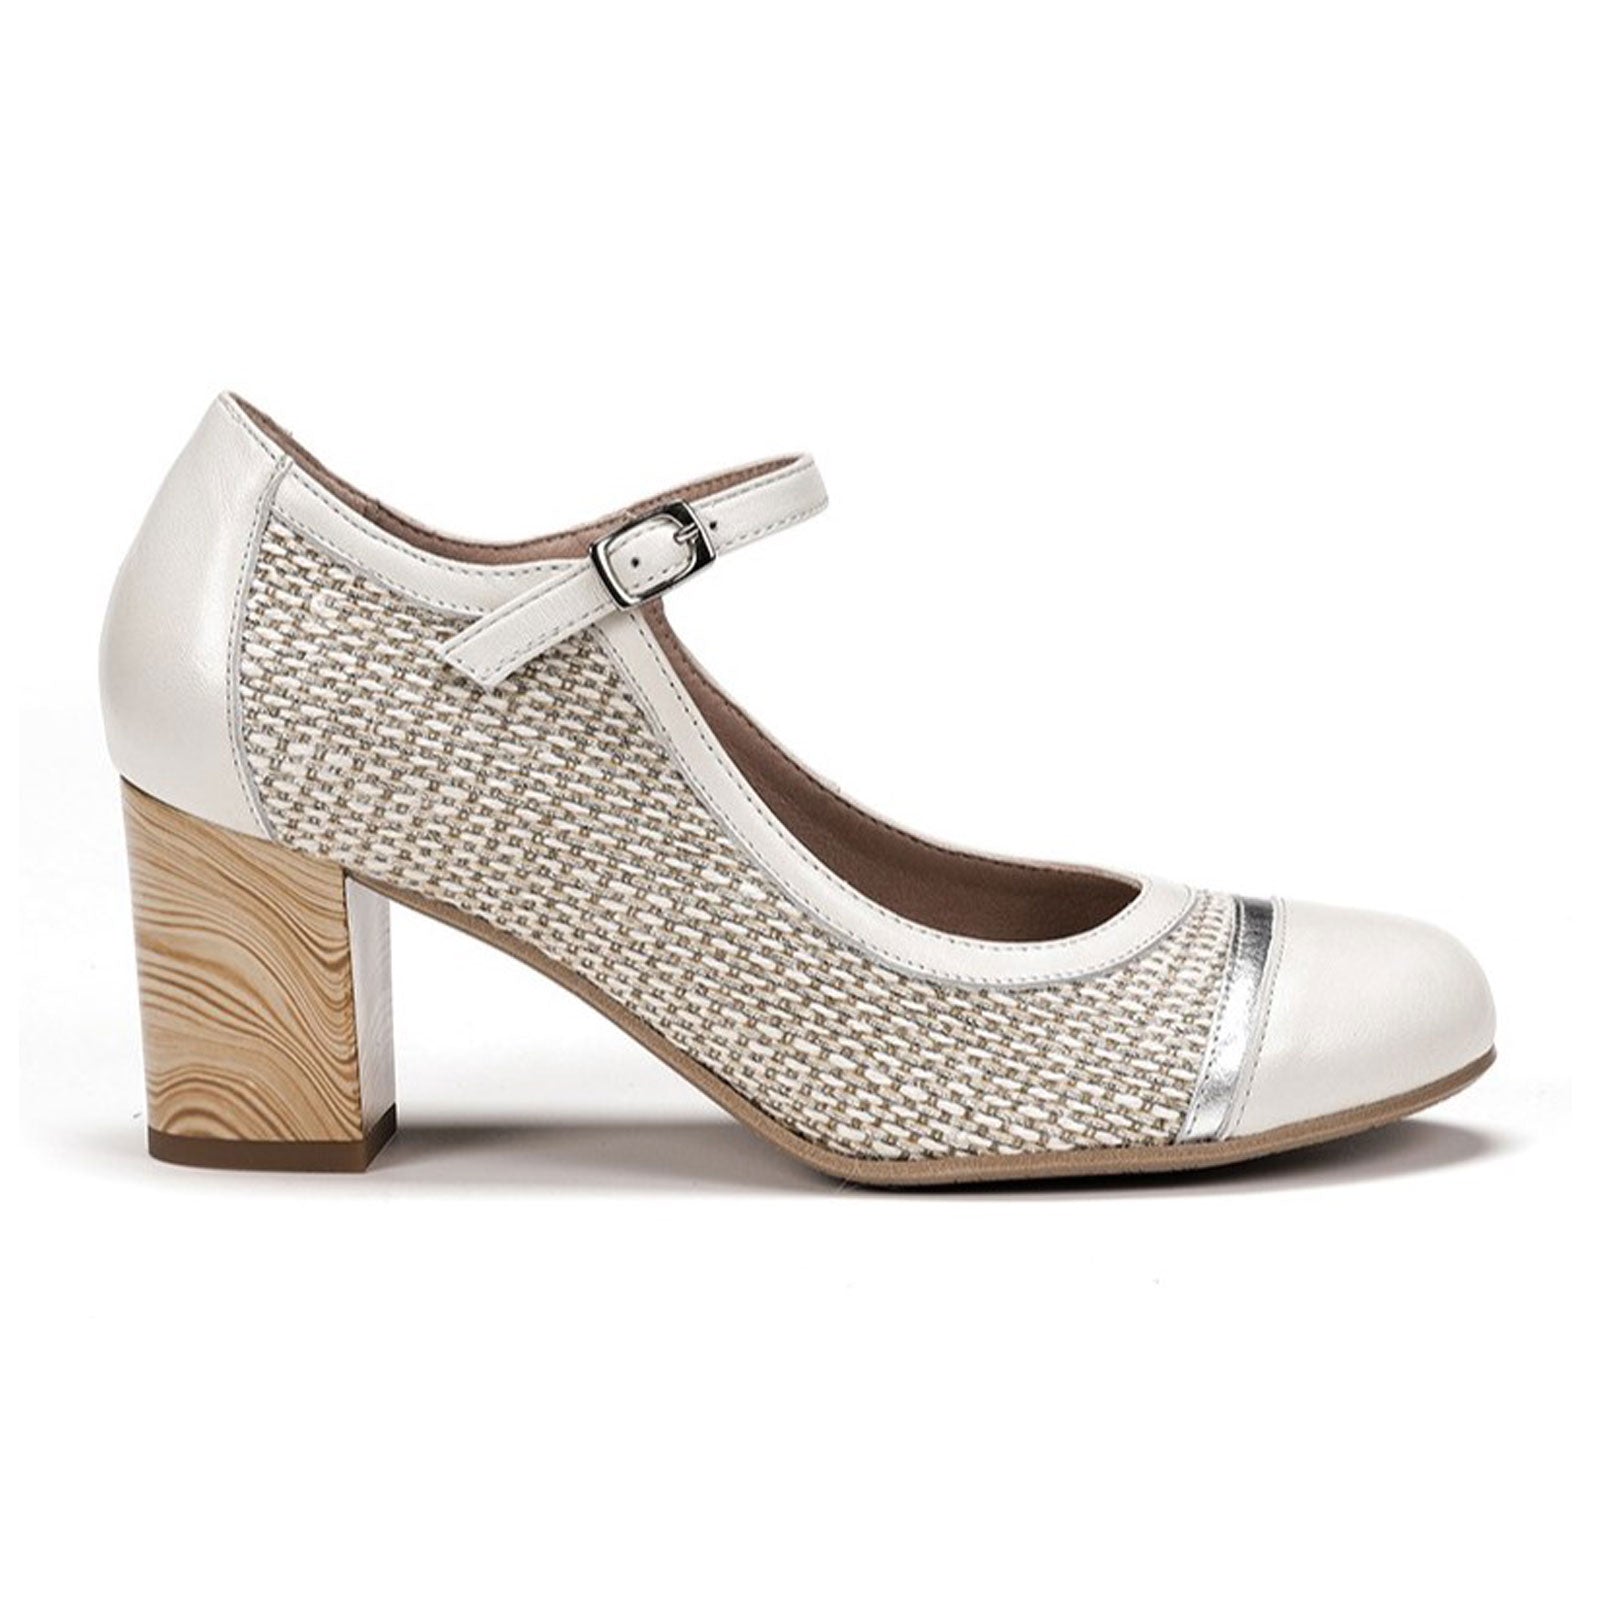 Buy Now Women Cream Embellished Comfort Heels – Inc5 Shoes